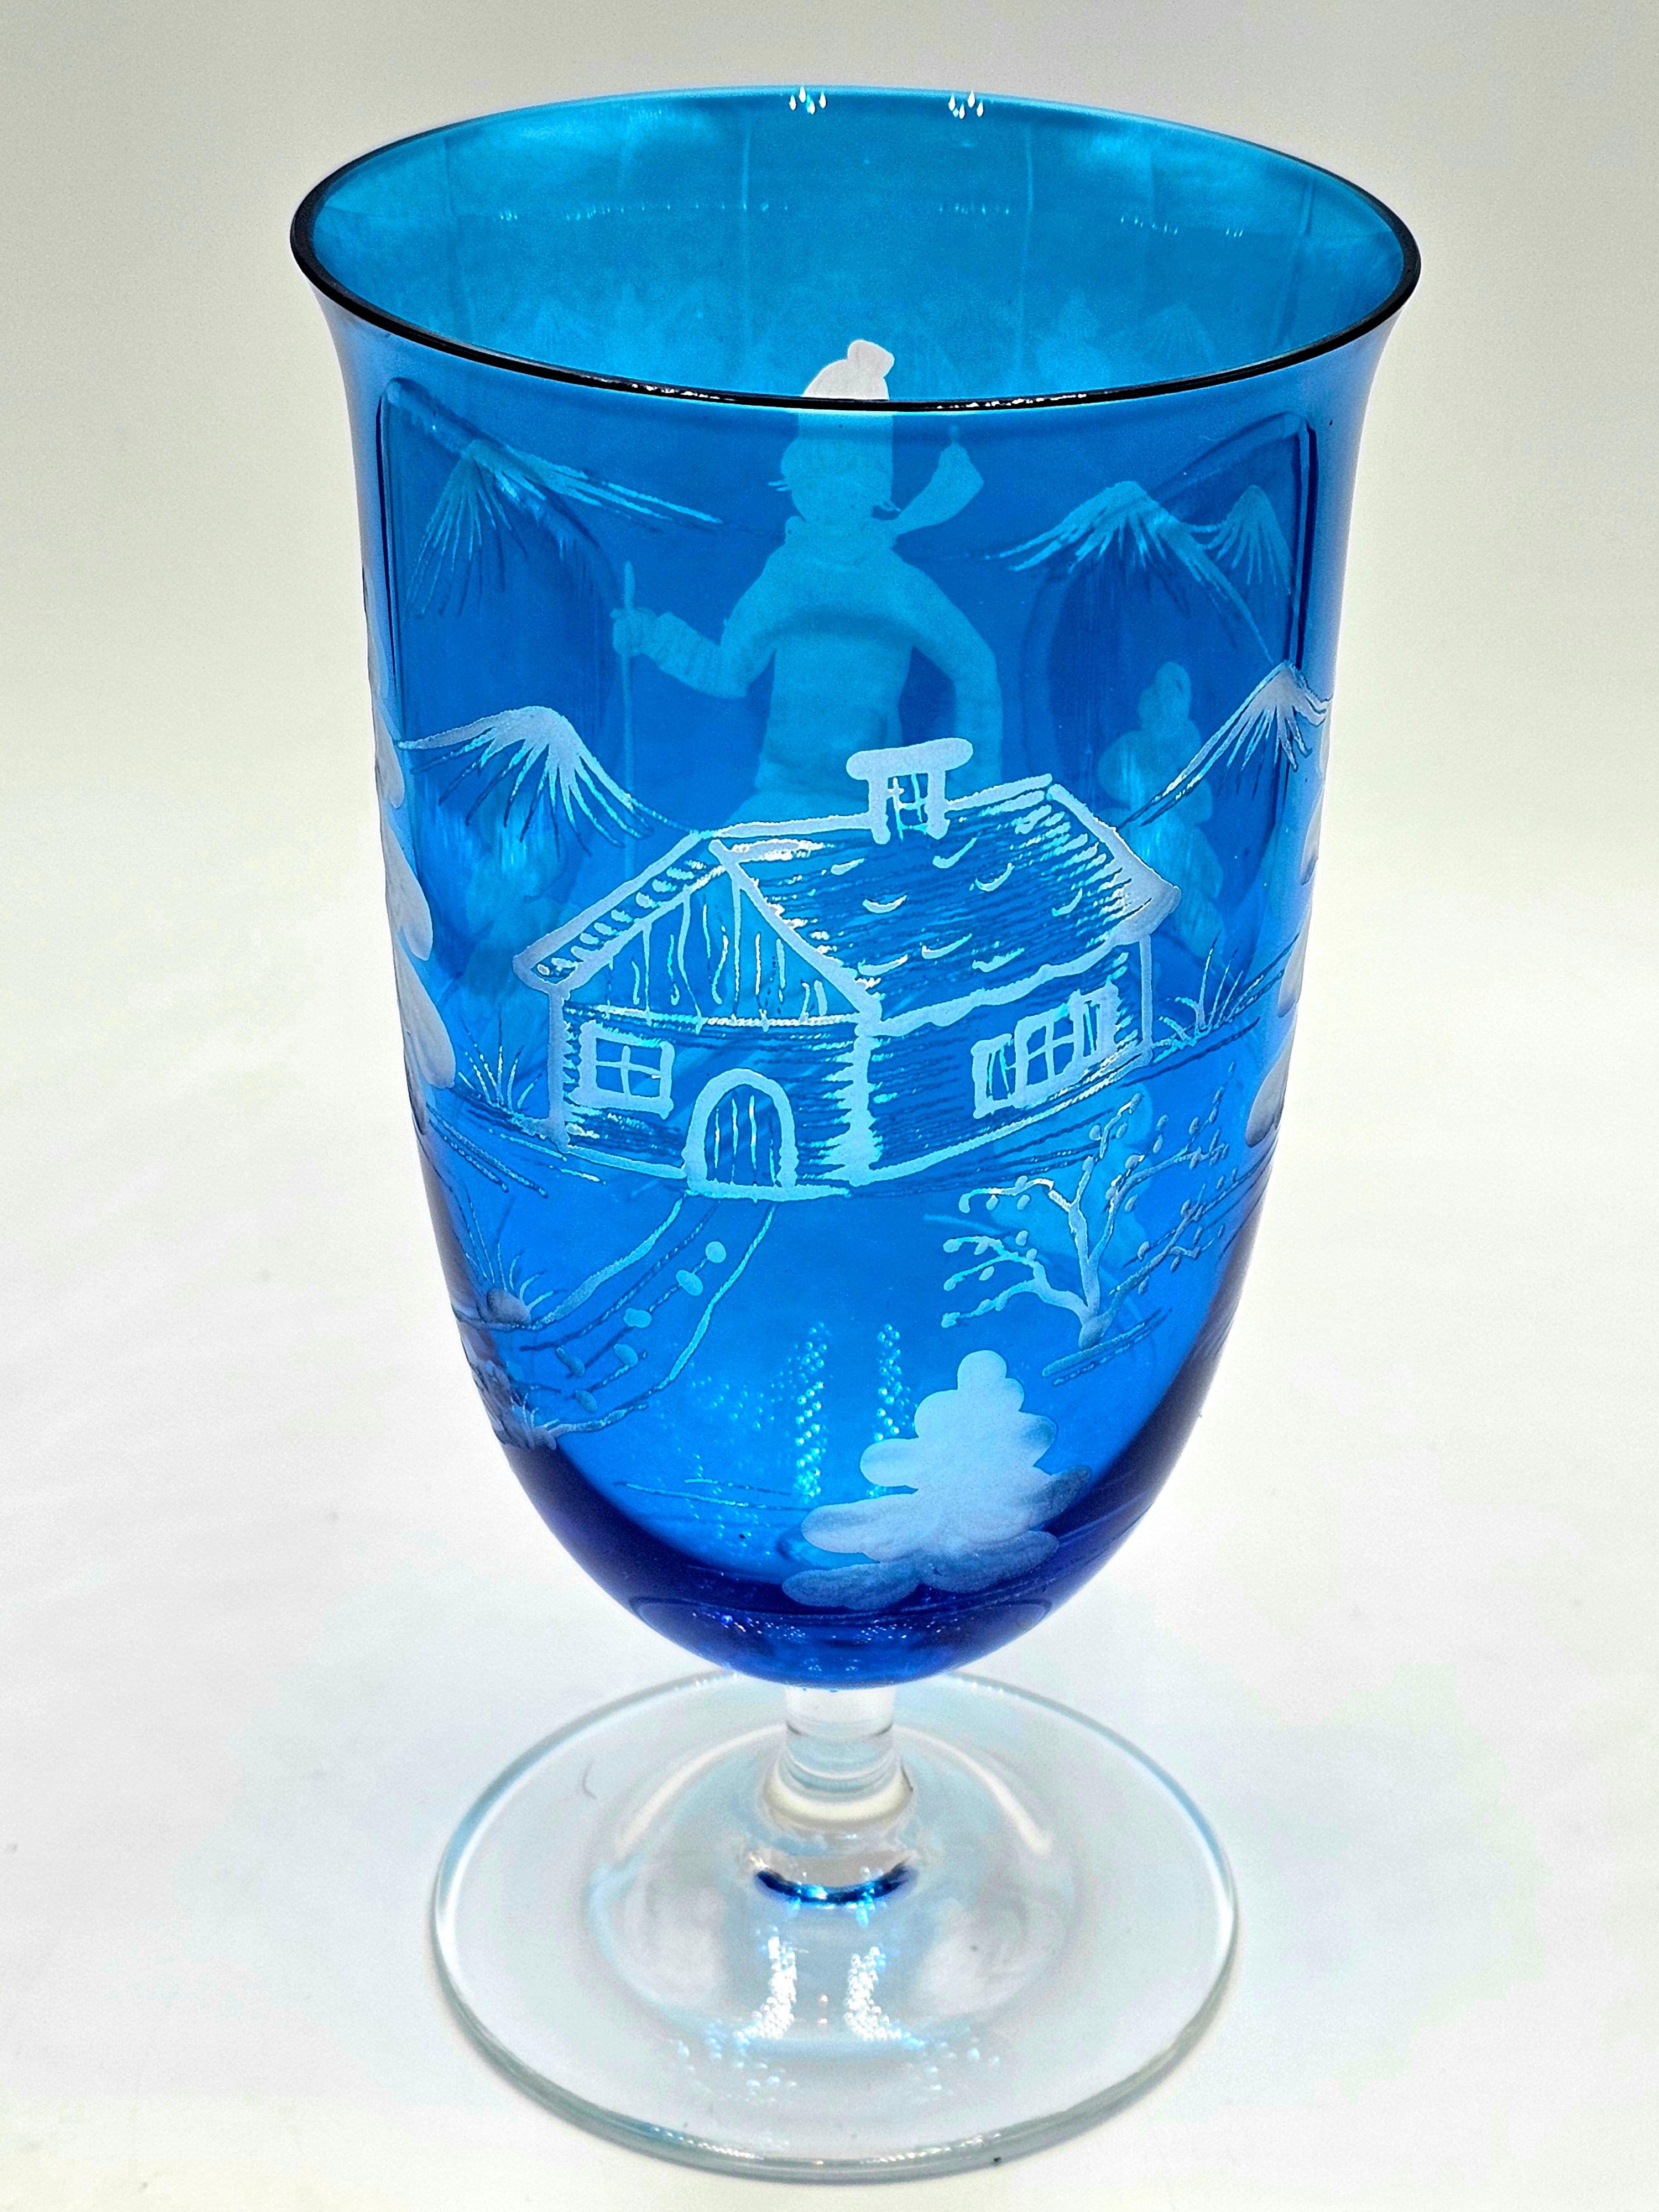 Set aus sechs mundgeblasenen blauen Kristallgläsern mit einem mundgeblasenen Skifahrerdekor rundherum. Das Dekor ist im Landhausstil gehalten und zeigt einen Skifahrerjungen, Bäume und Berge sowie eine Hütte auf dem Glas. Eine passende